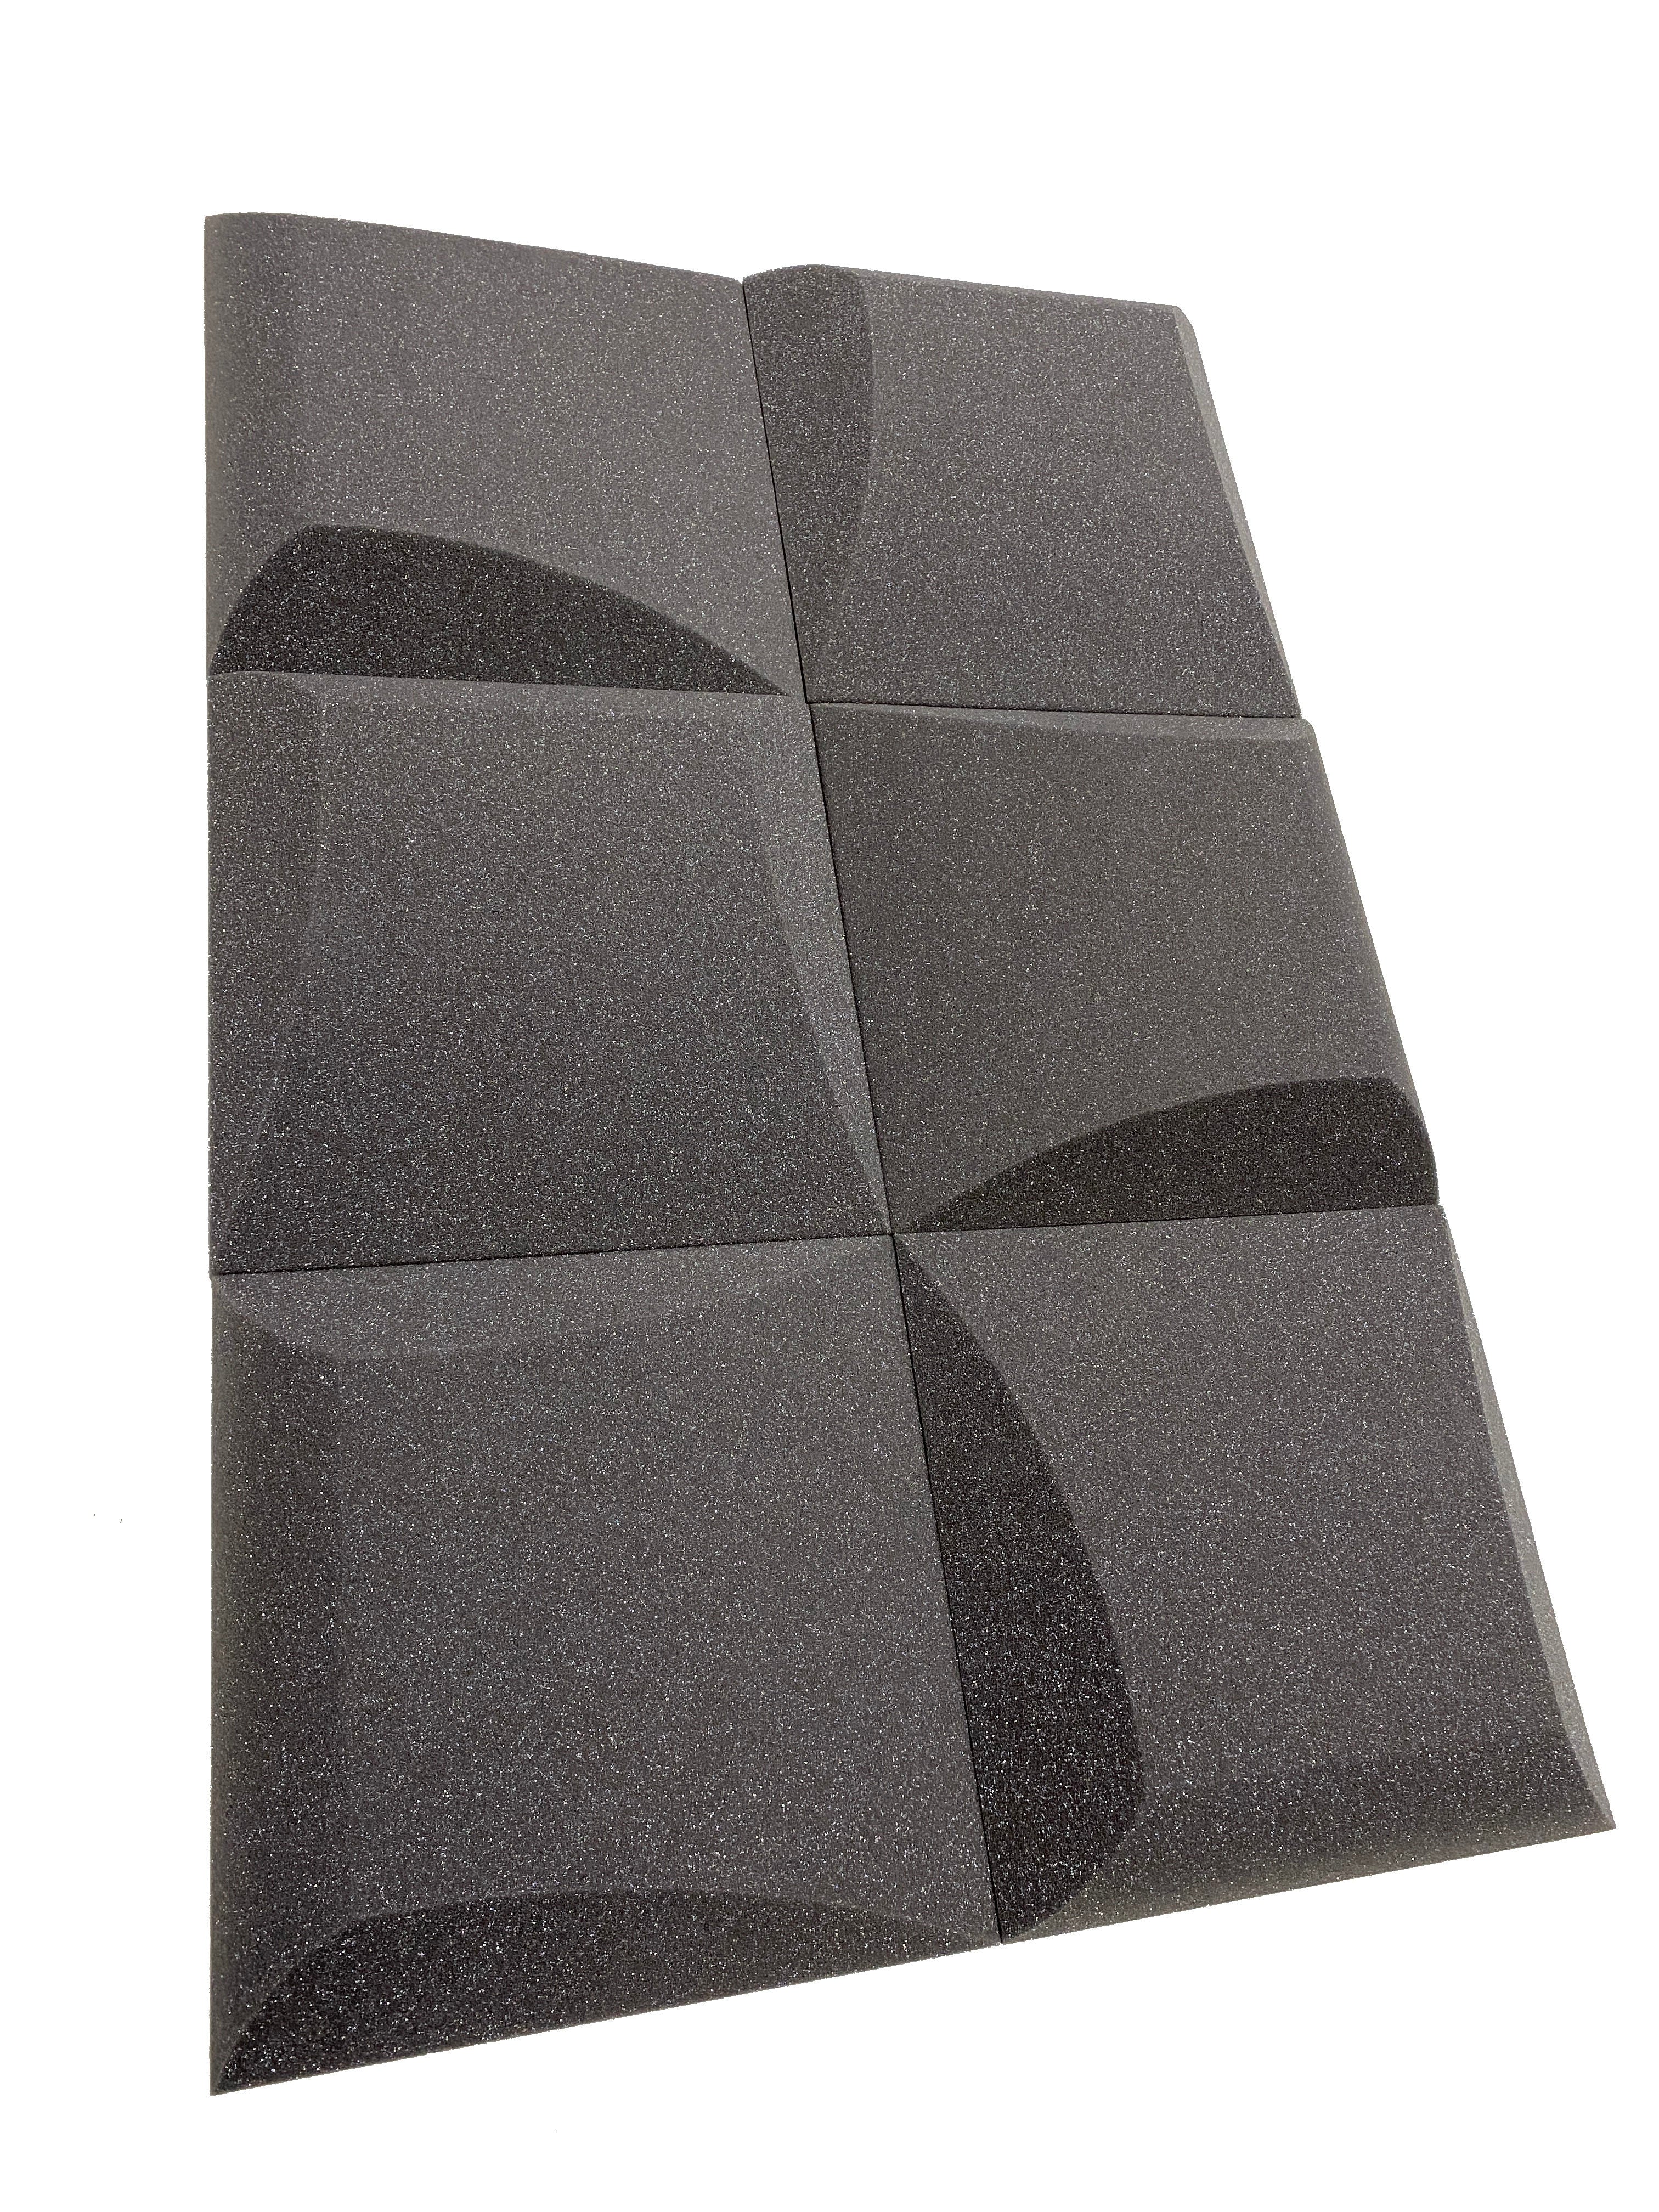 Kaufen mittelgrau AeroFoil 12&quot; Acoustic Studio Foam Tile Pack - 12 Tiles, 1.1qm Coverage